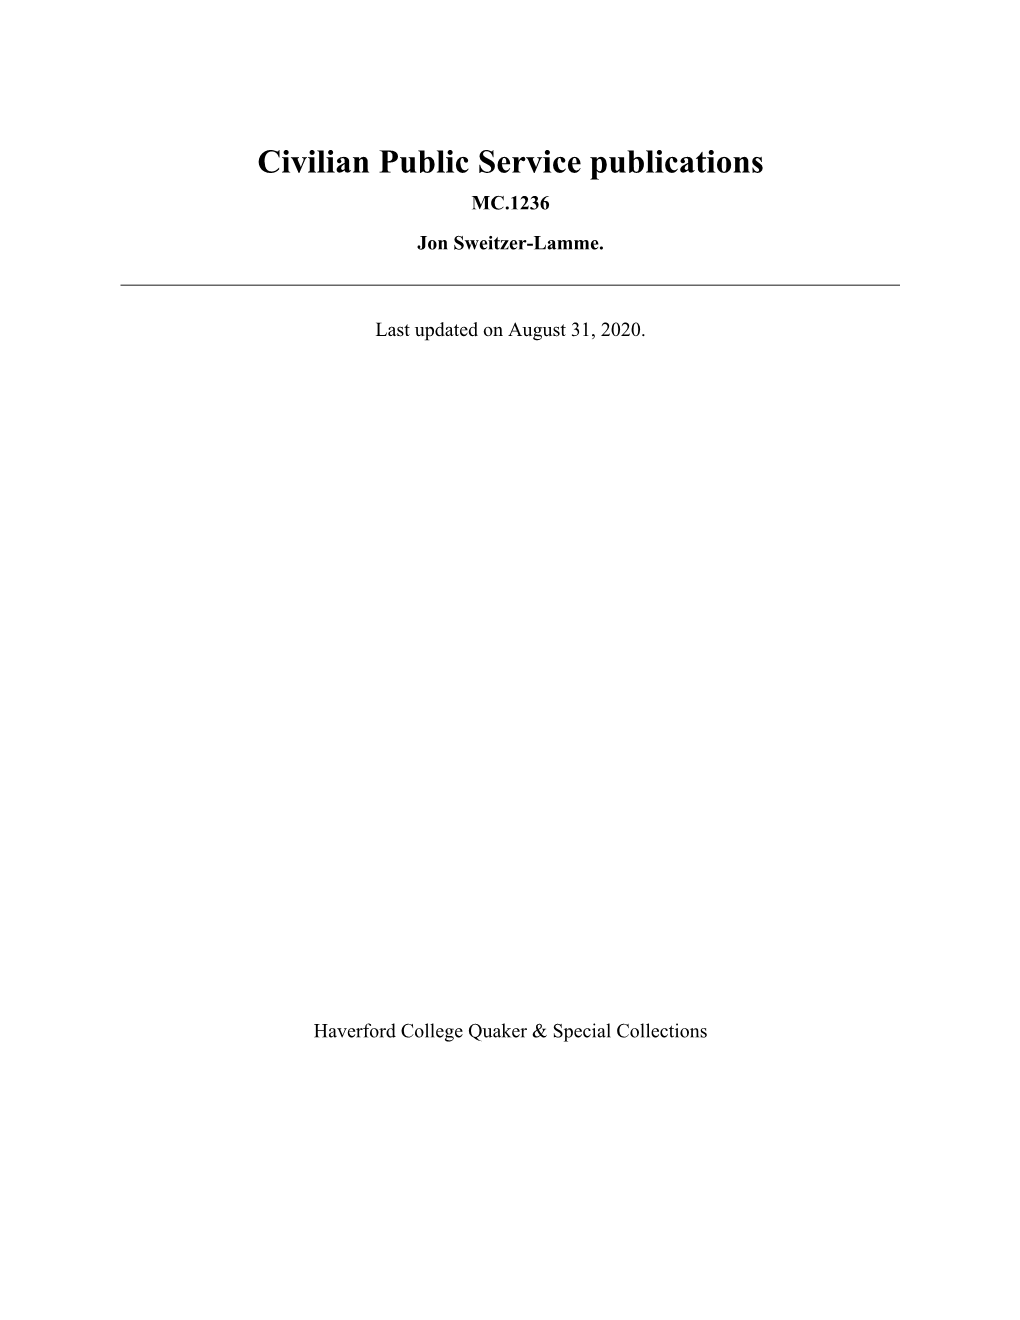 Civilian Public Service Publications MC.1236 Jon Sweitzer-Lamme